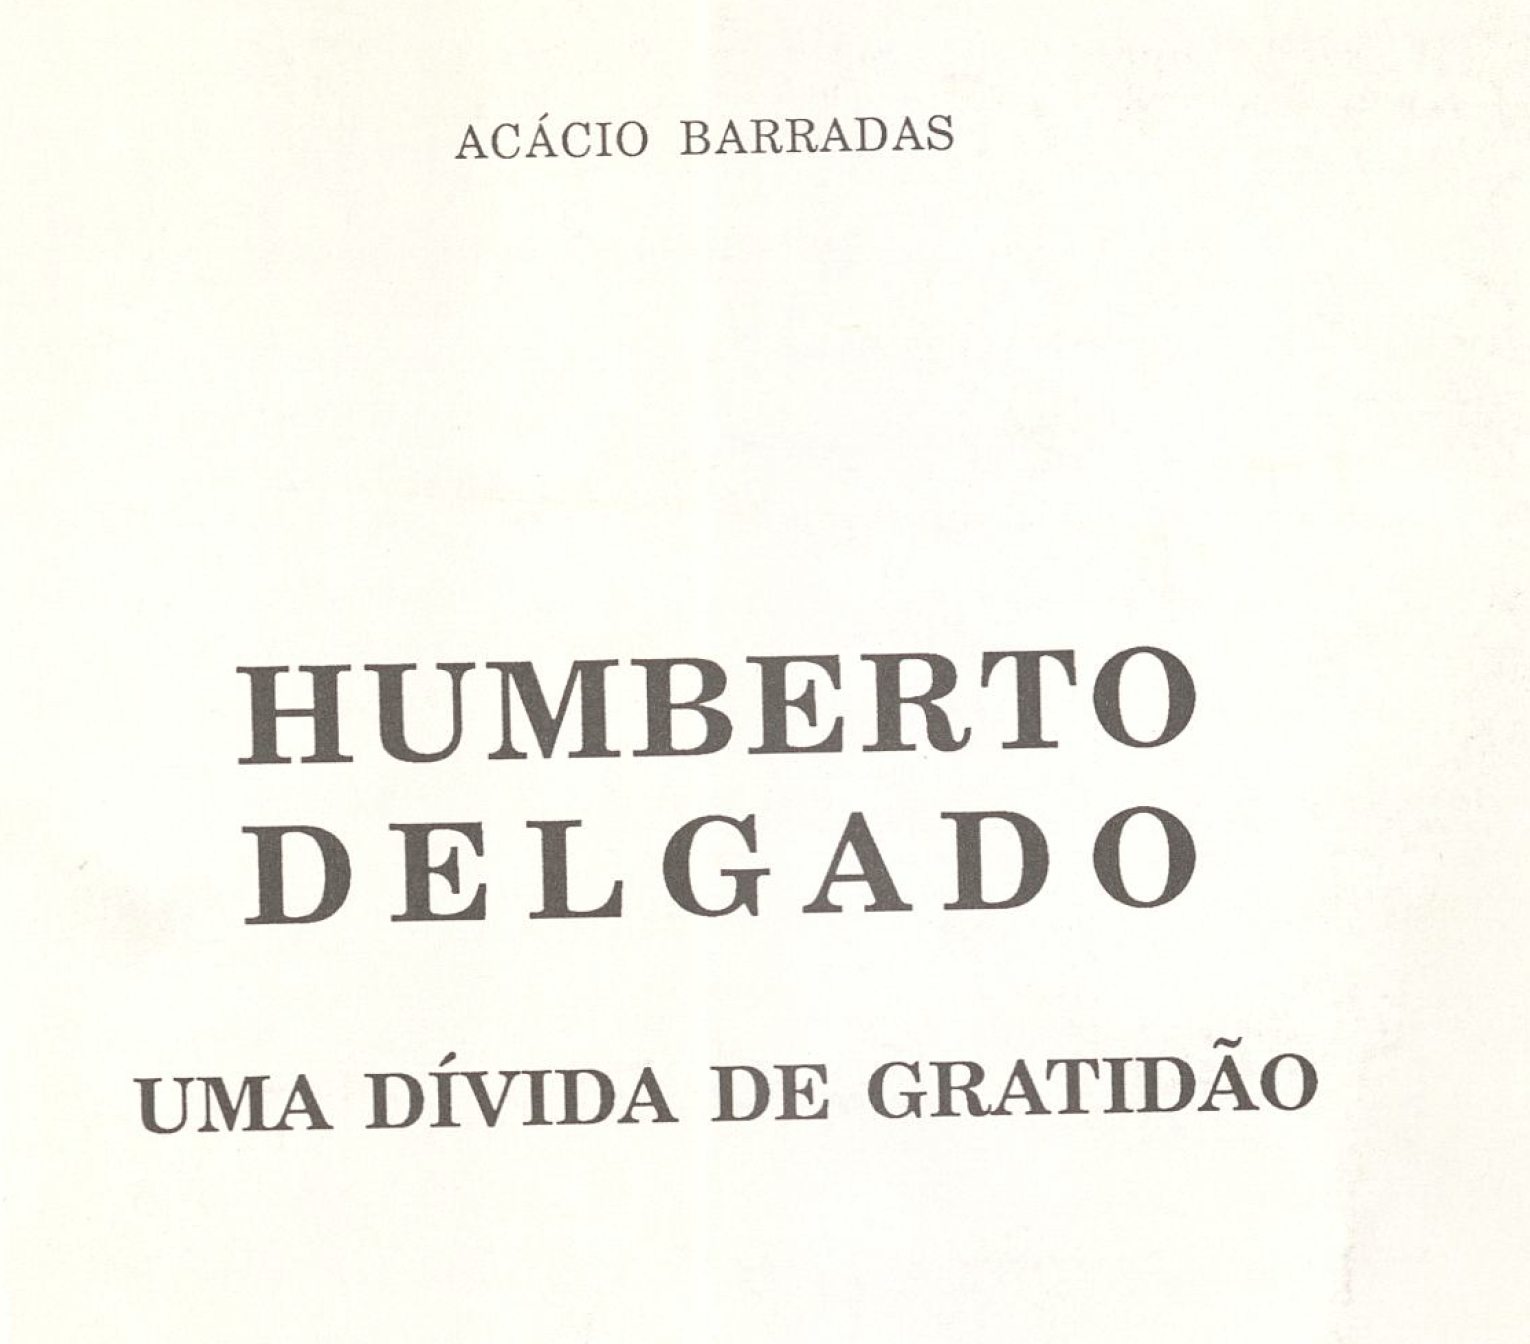 Humberto Delgado - Uma dívida de gratidão